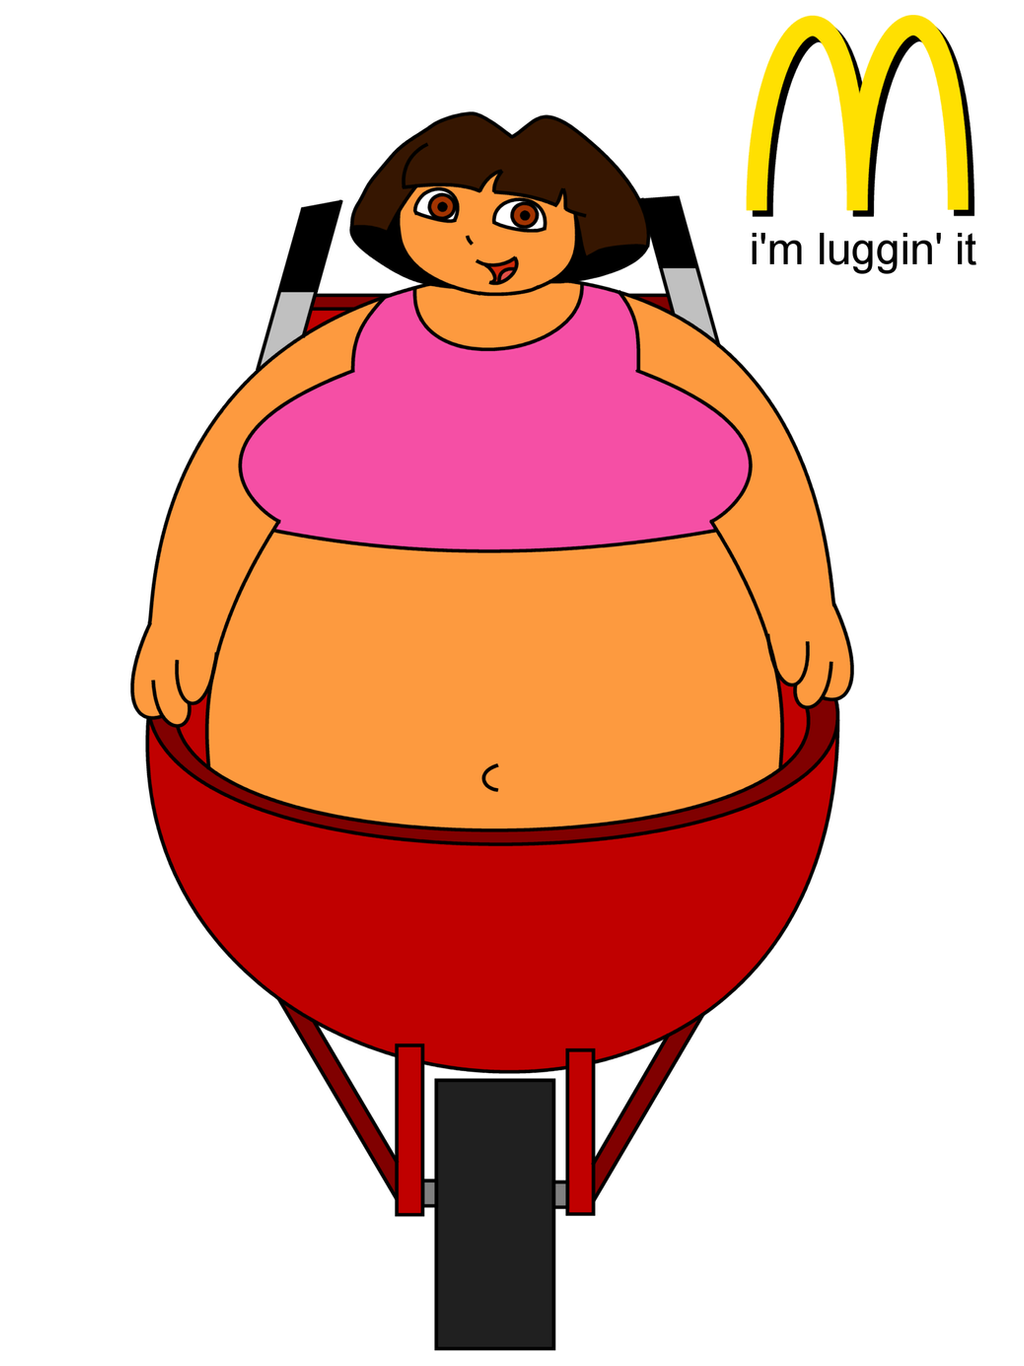 Dora the Explorer luggin' it